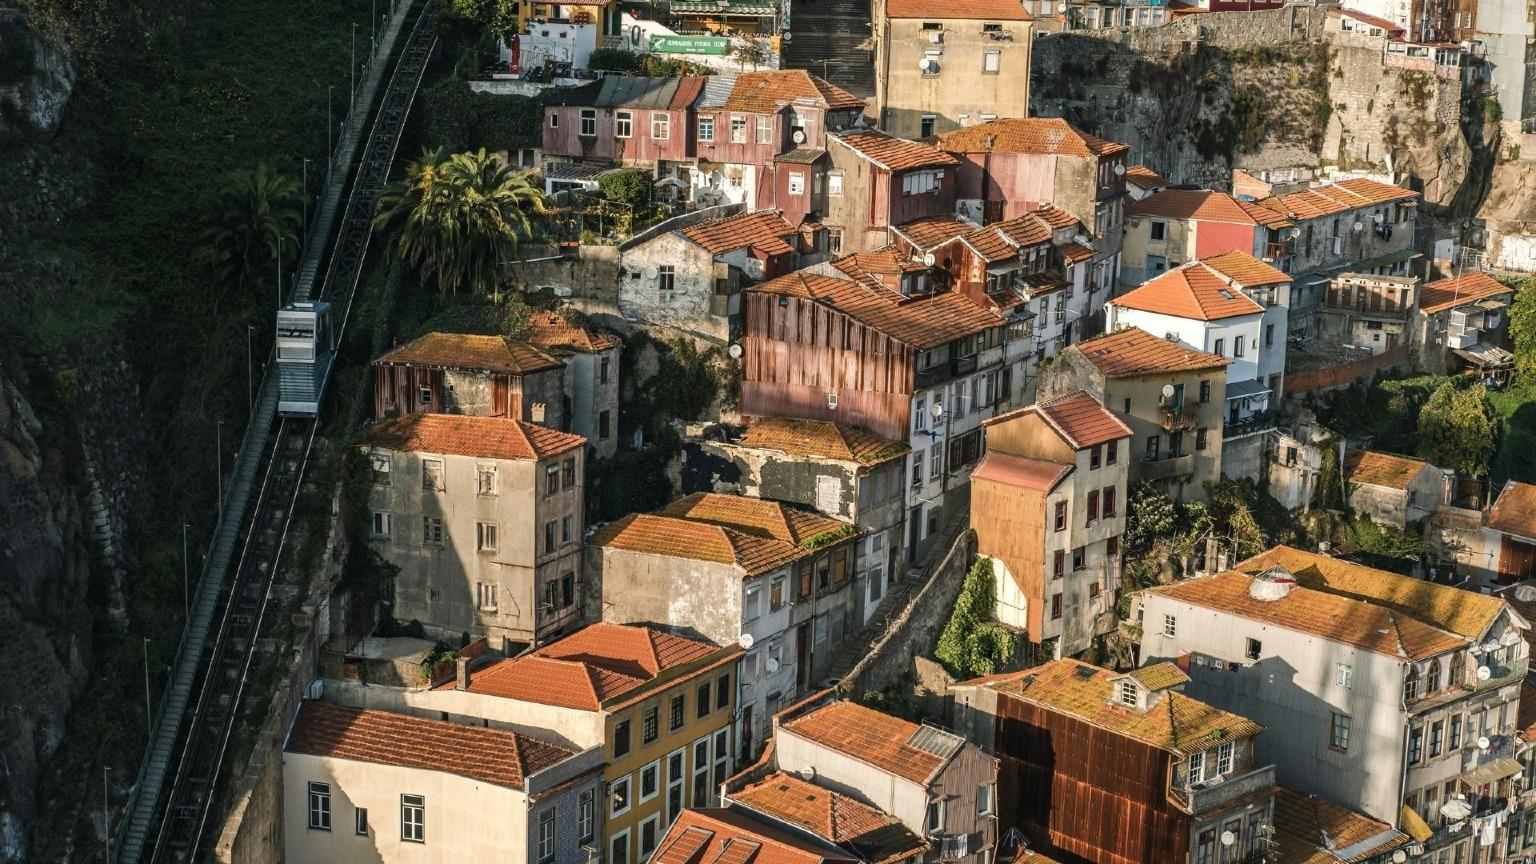 El Funicular dos Guindais asciende desde el nivel superior de Oporto (Batalha) hasta el nivel inferior (Ribeira), ofreciendo impresionantes vistas del paisaje urbano.